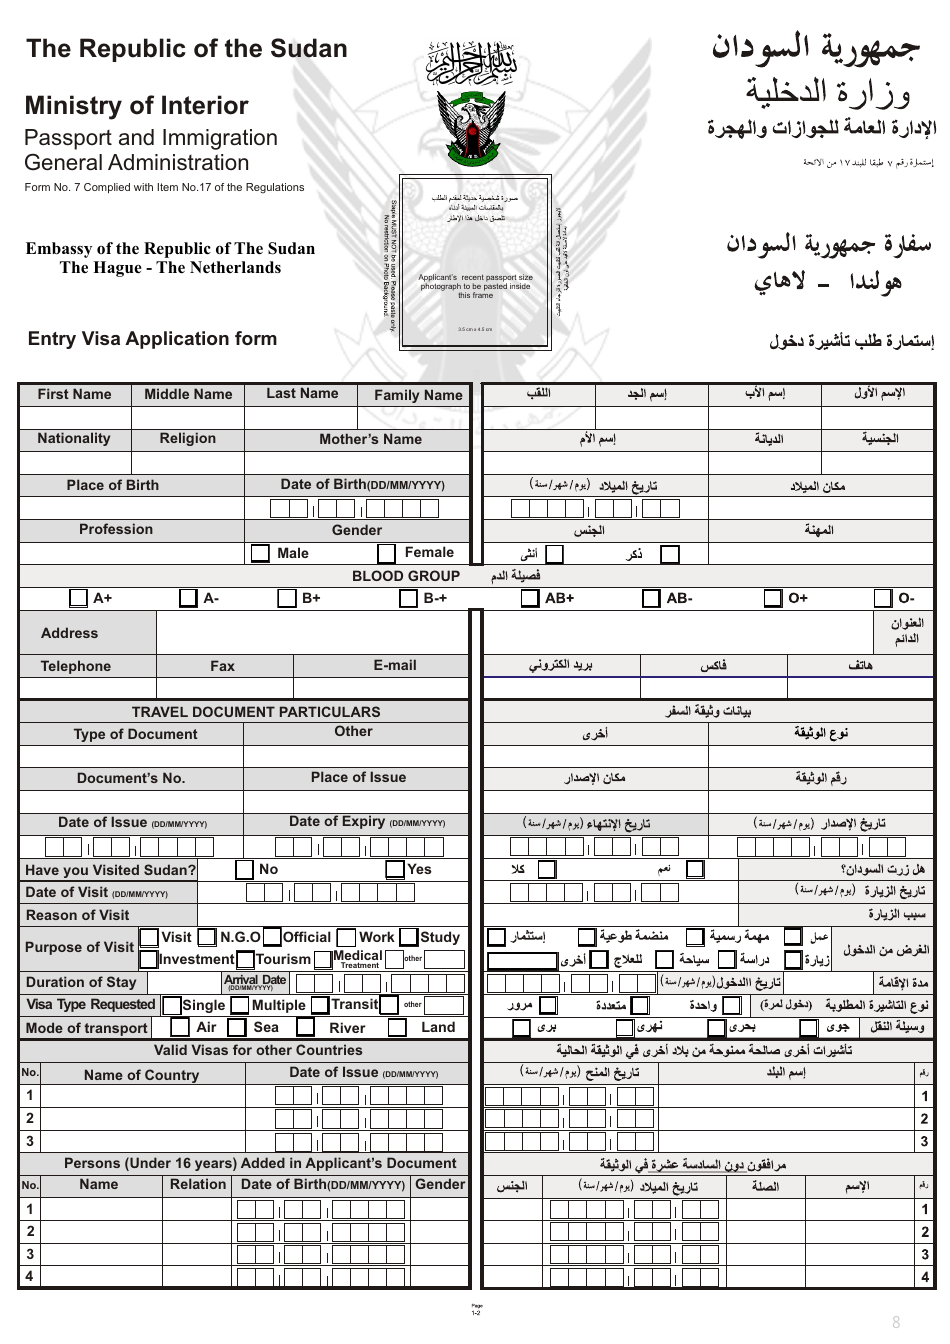 Form 7 Entry Visa Application Form - Sudan (English / Arabic), Page 1